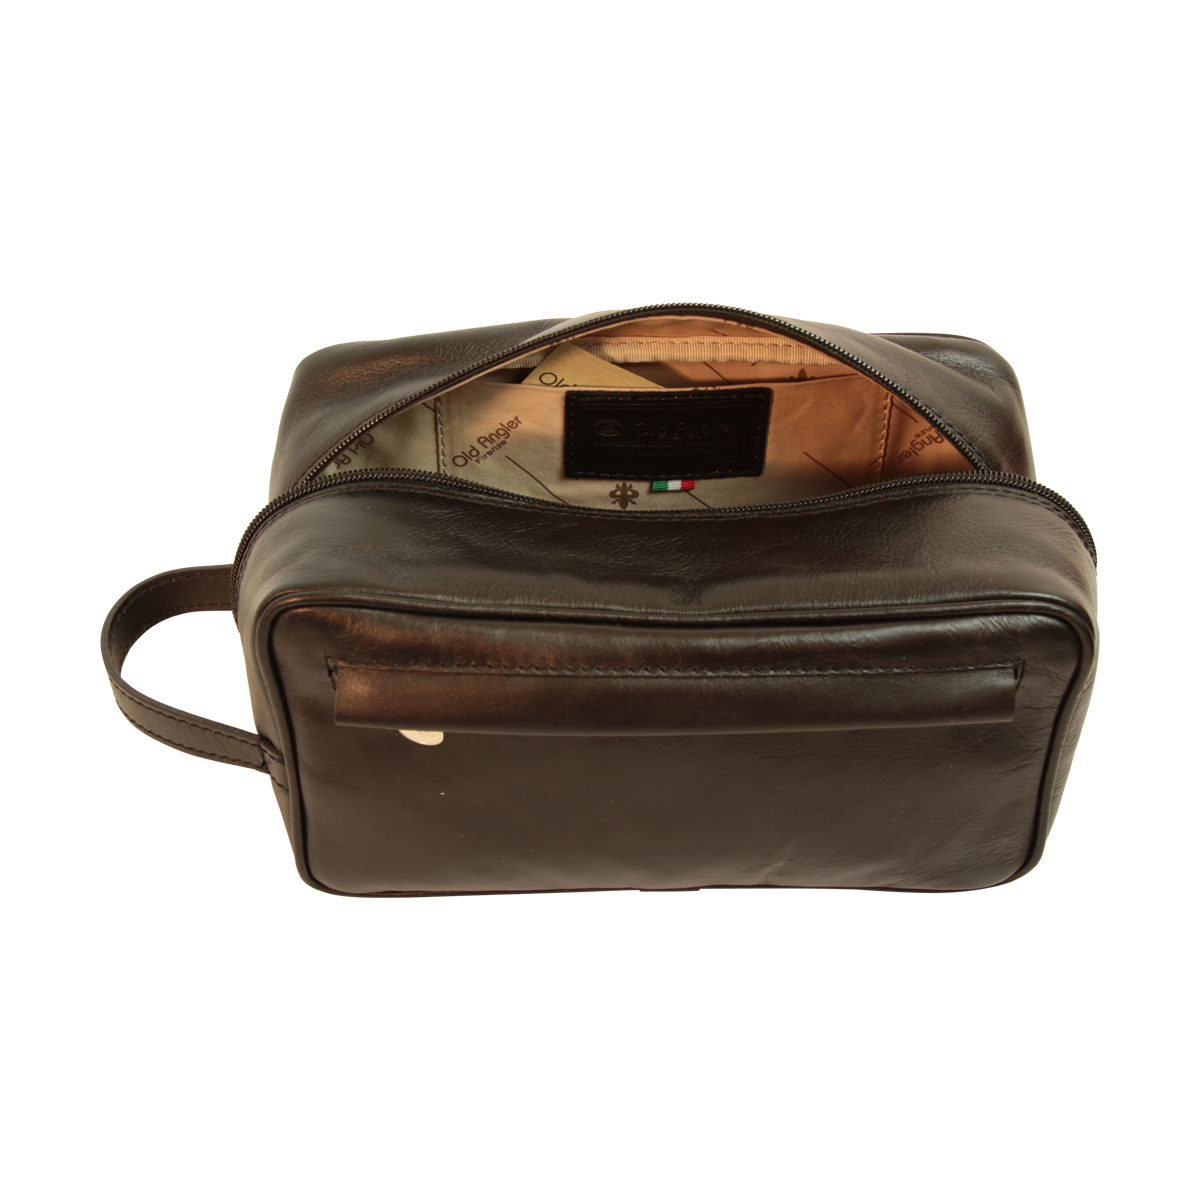 Full-grain calfskin leather beauty case- Black 078989NE | 078989NE UK | Old Angler Firenze